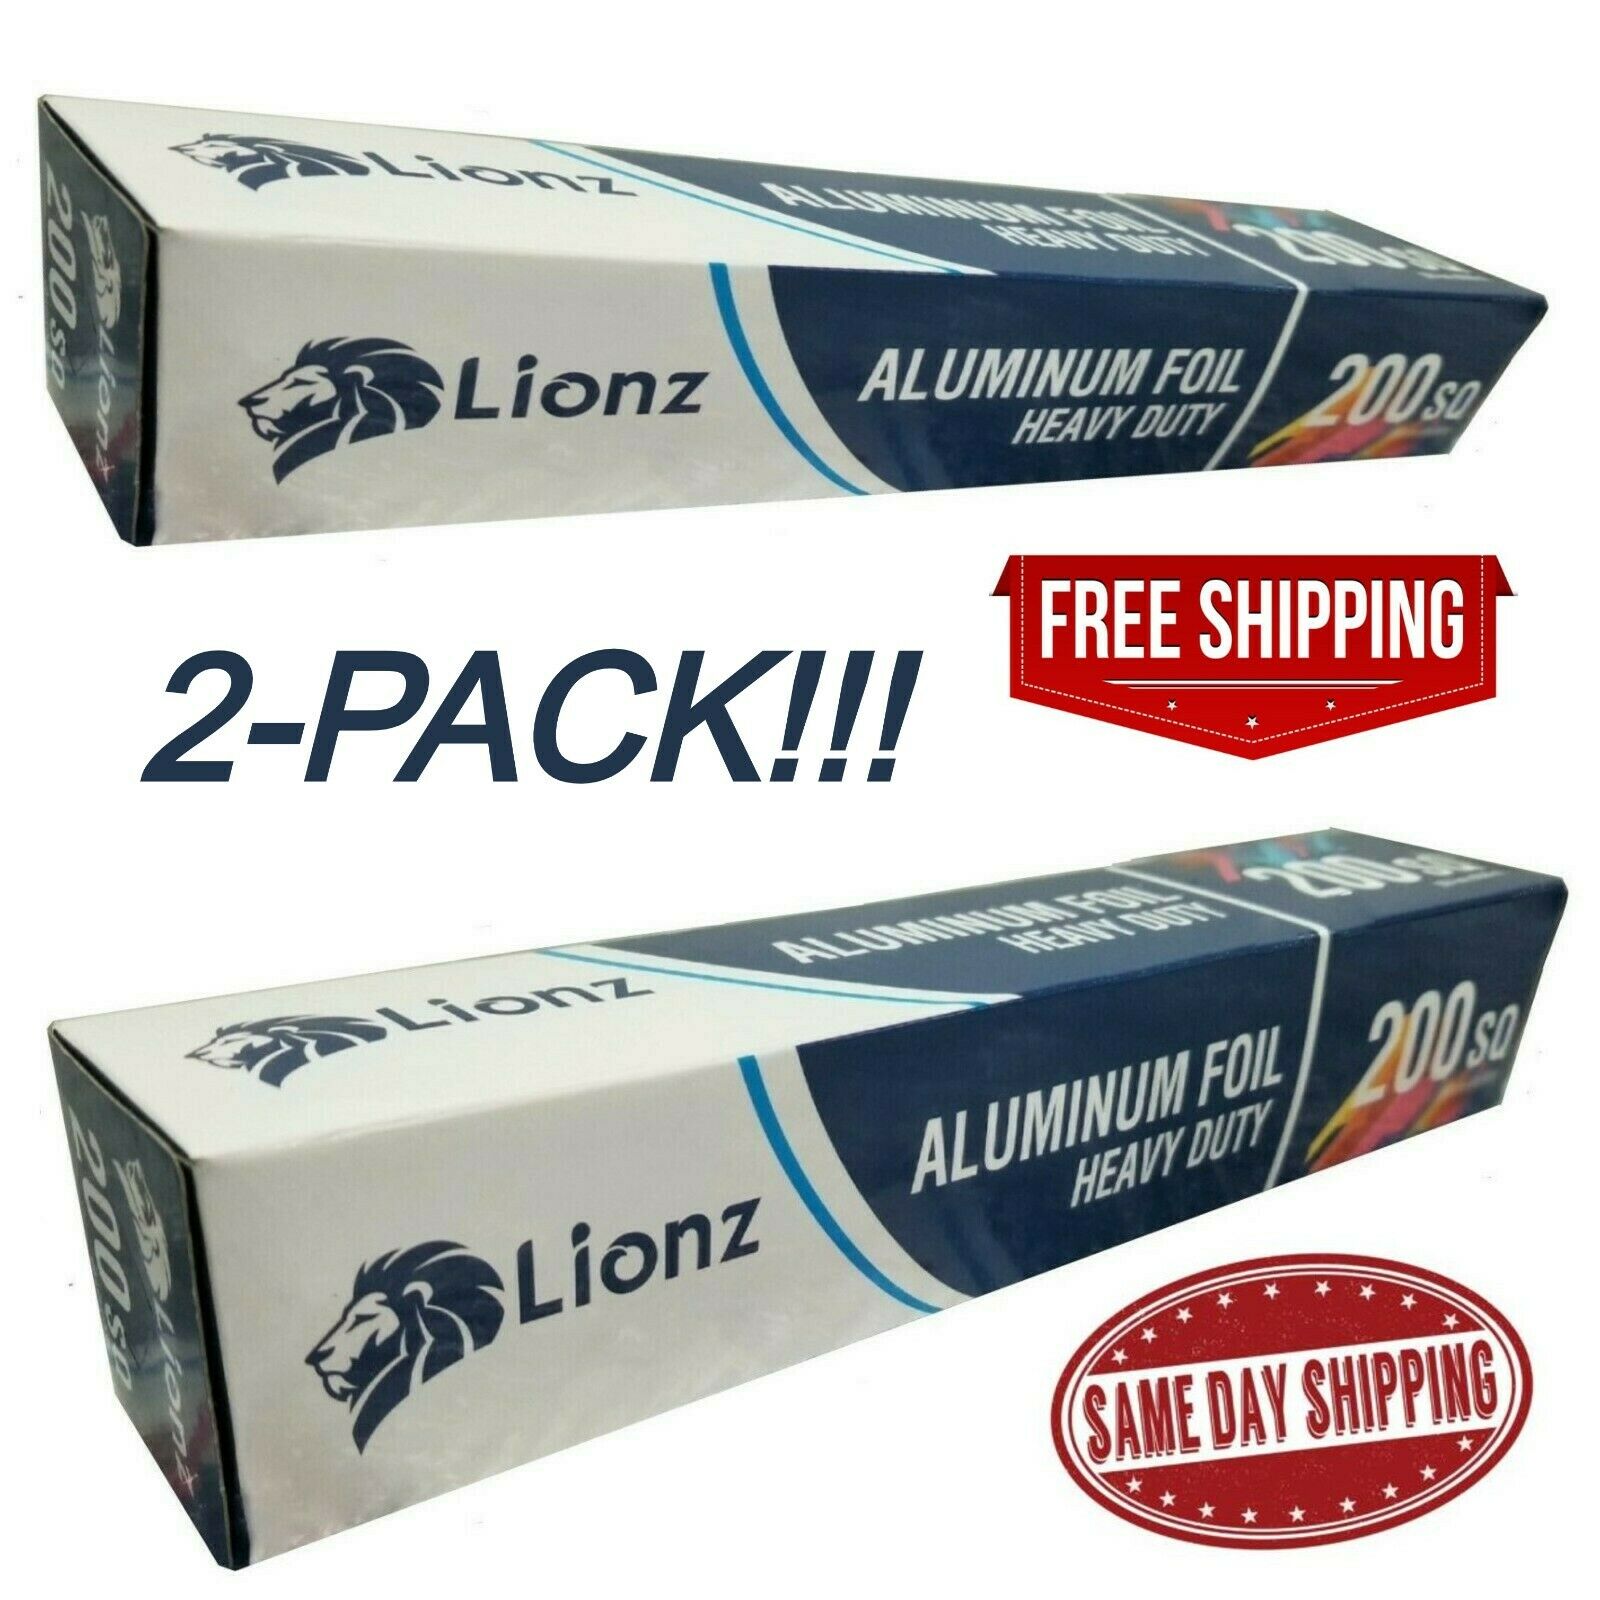 Aluminum Foil Roll 400 Sq Ft Lionz Wrap Measuring 12" X 200' Tinfoil Hd (2-pack)